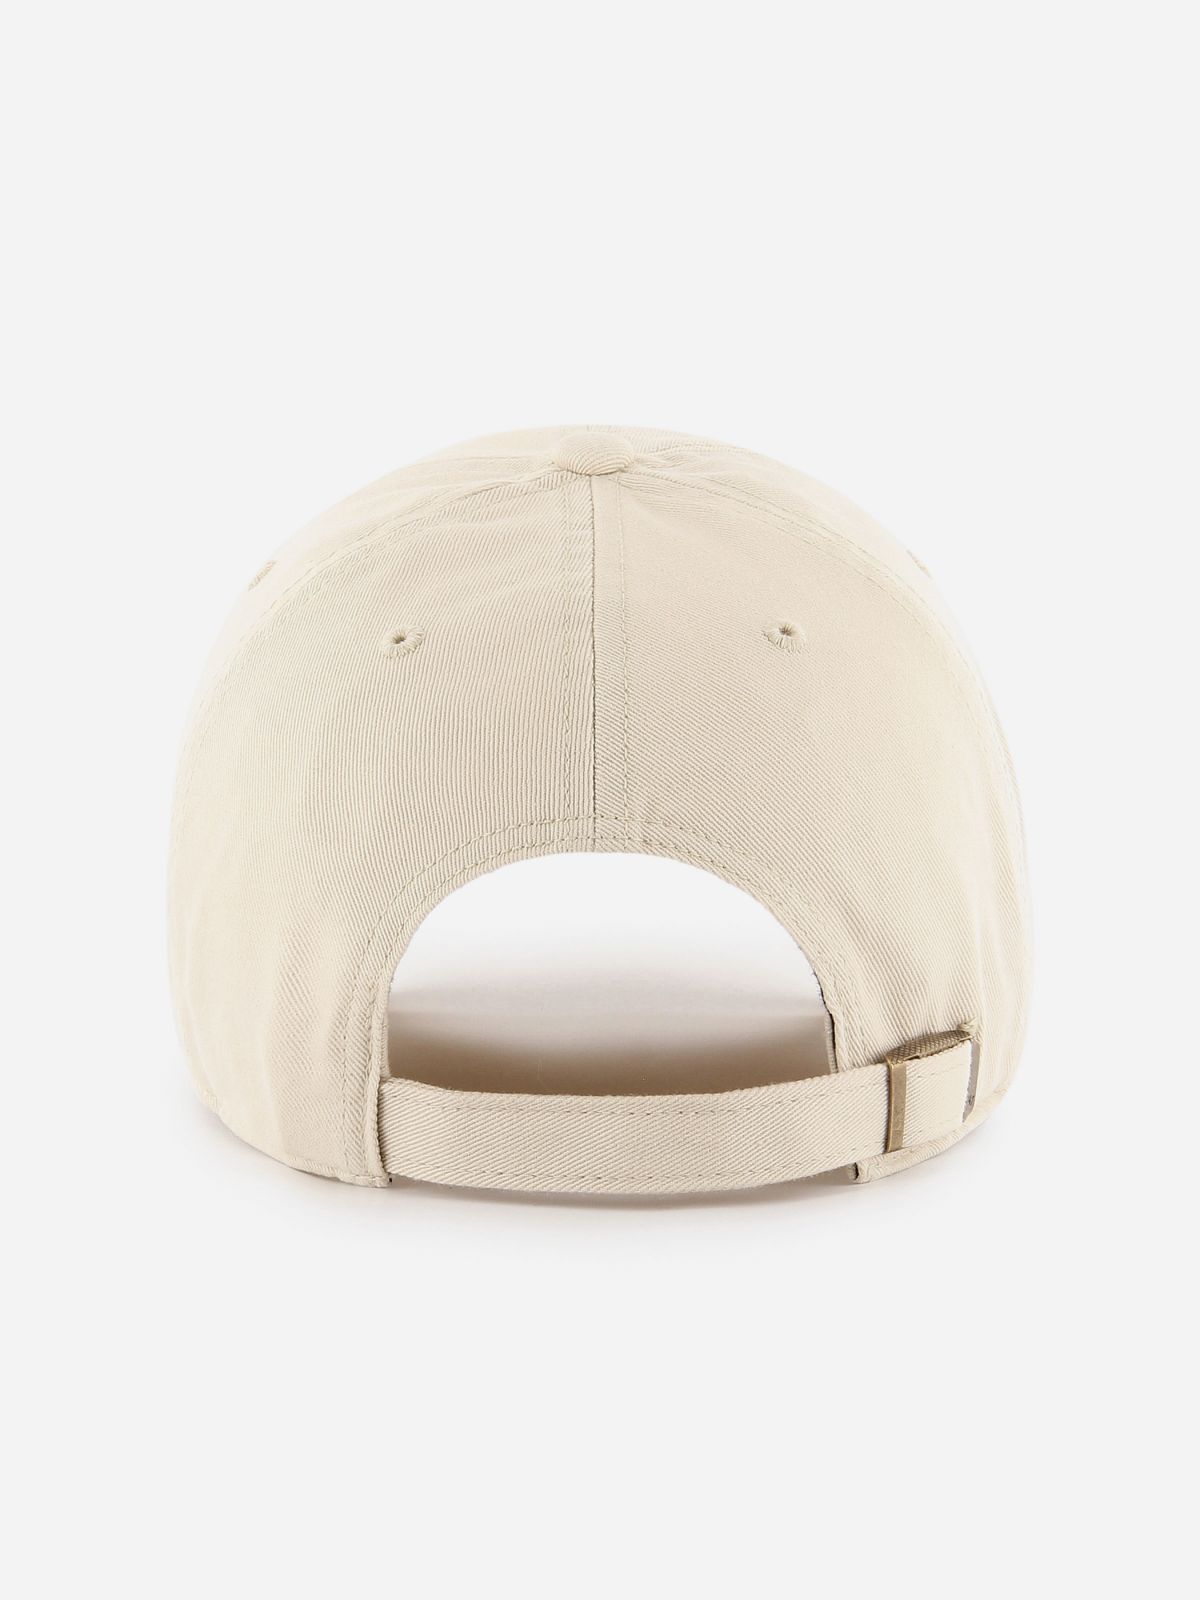  כובע מצחייה עם לוגו רקום / נשים של BRAND 47